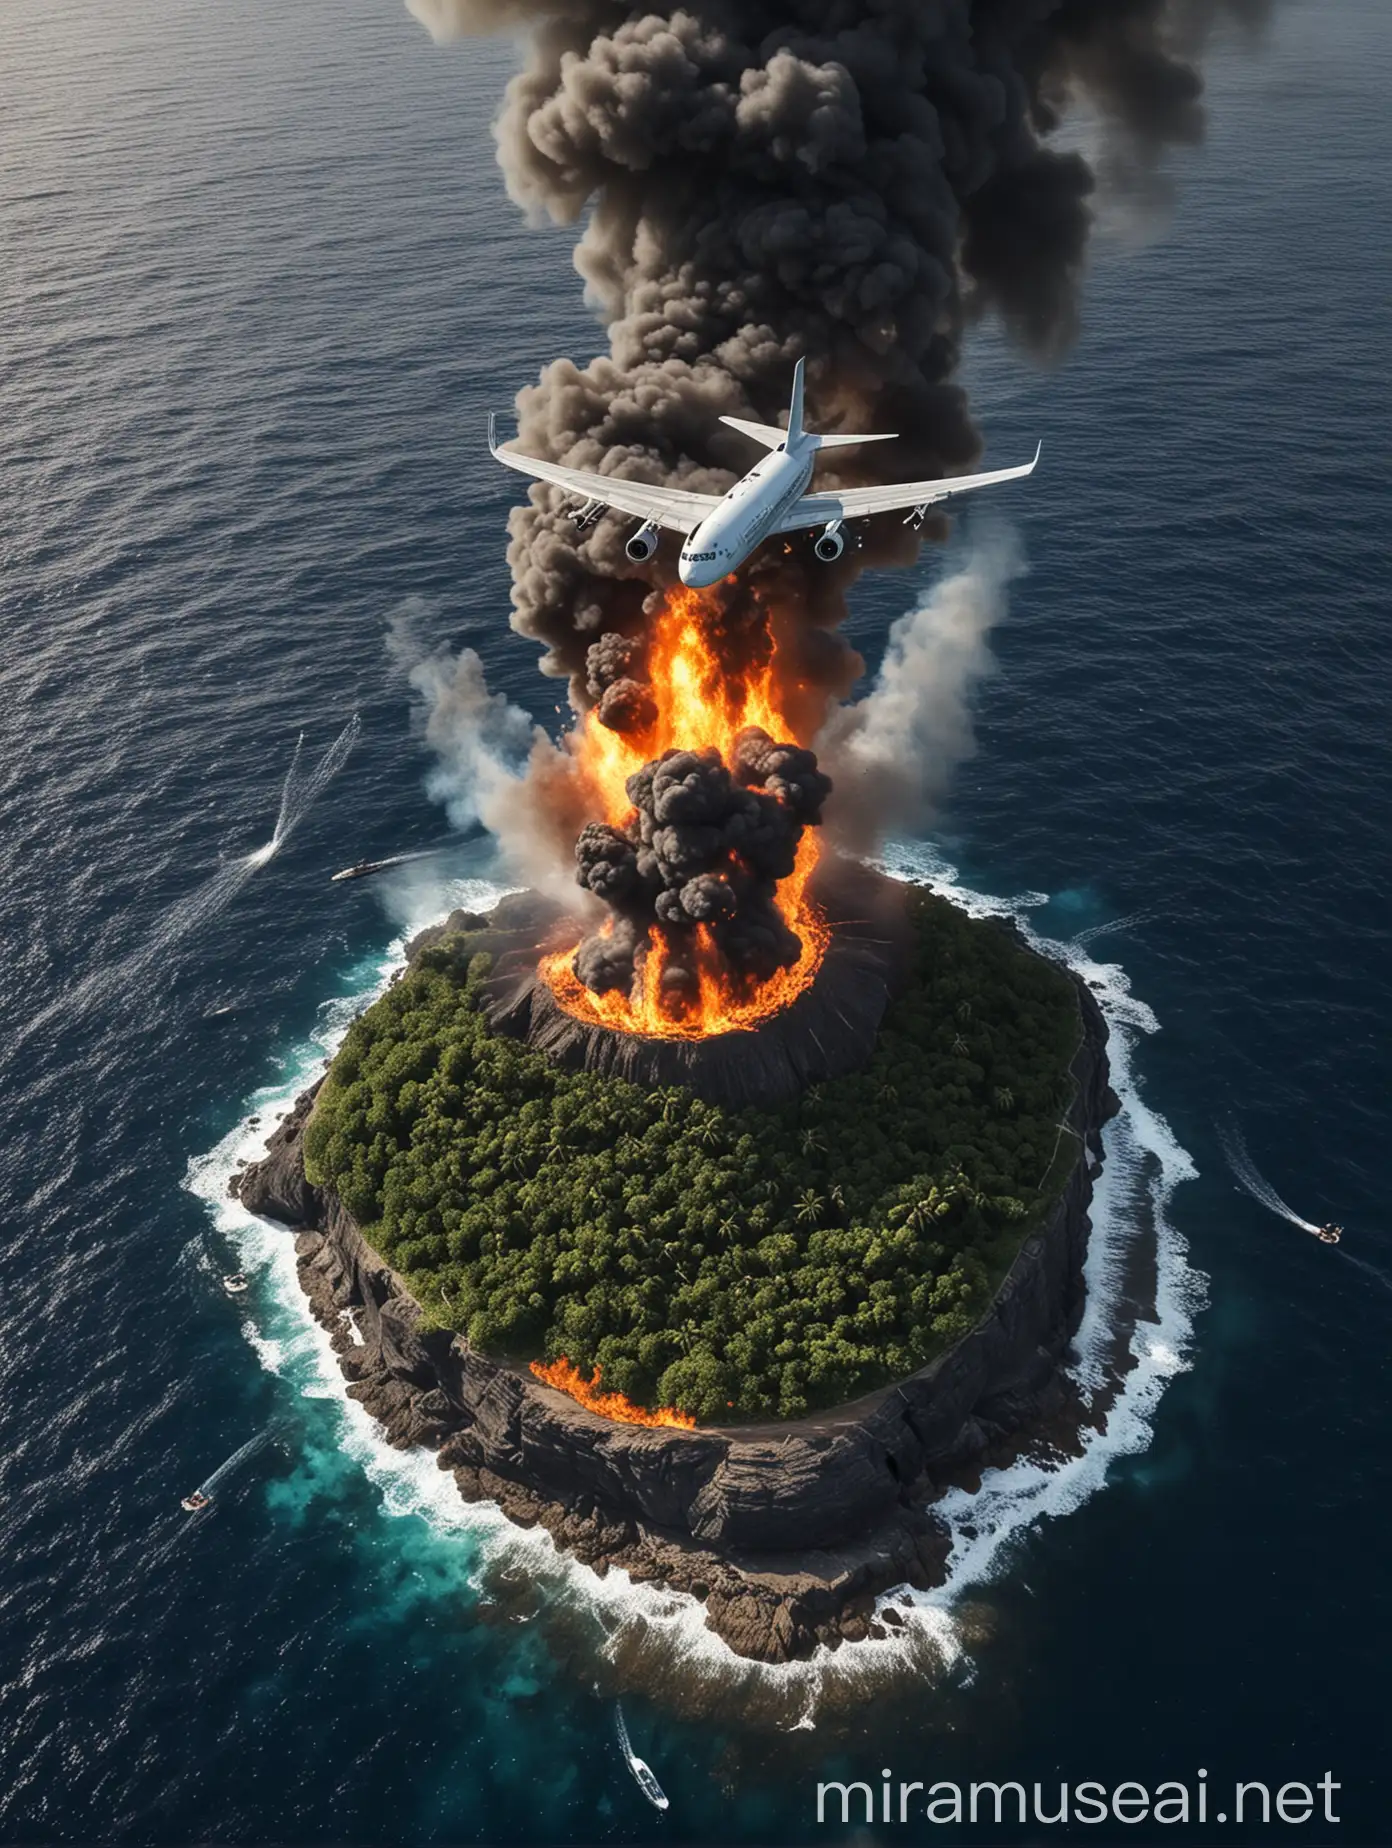 Burning Plane Crash on Isolated Ocean Island